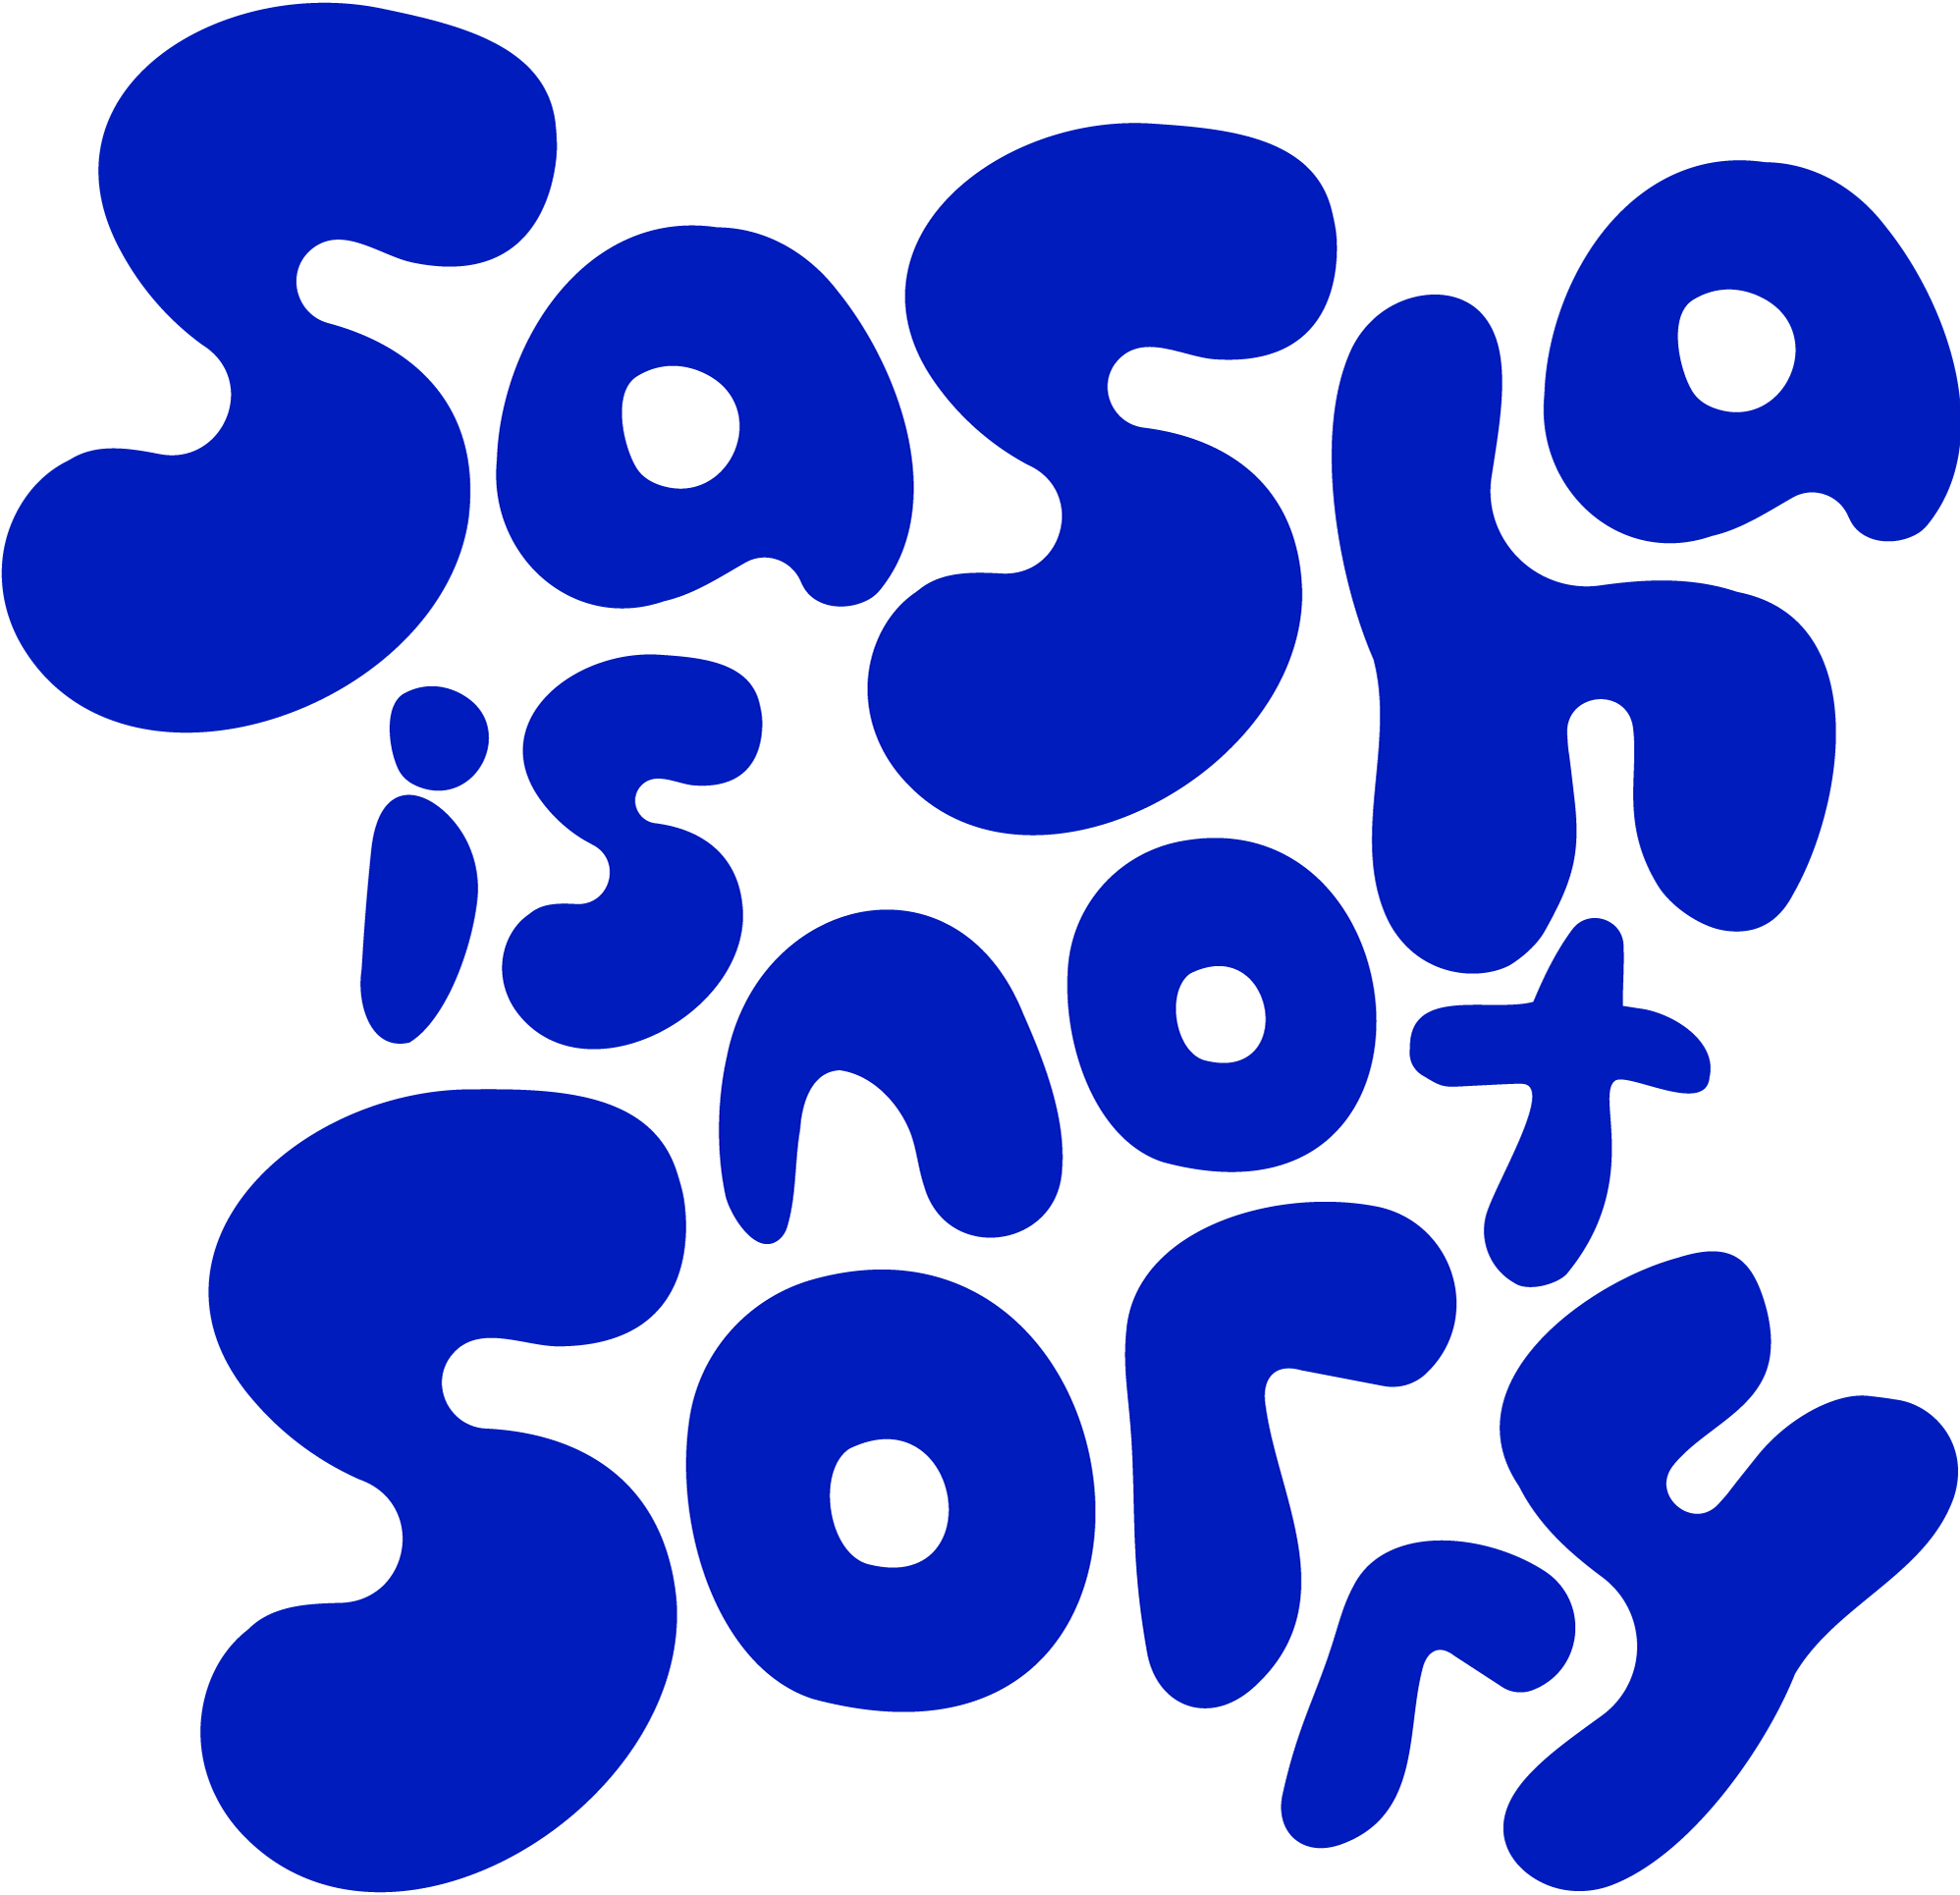 sasha is not sorry